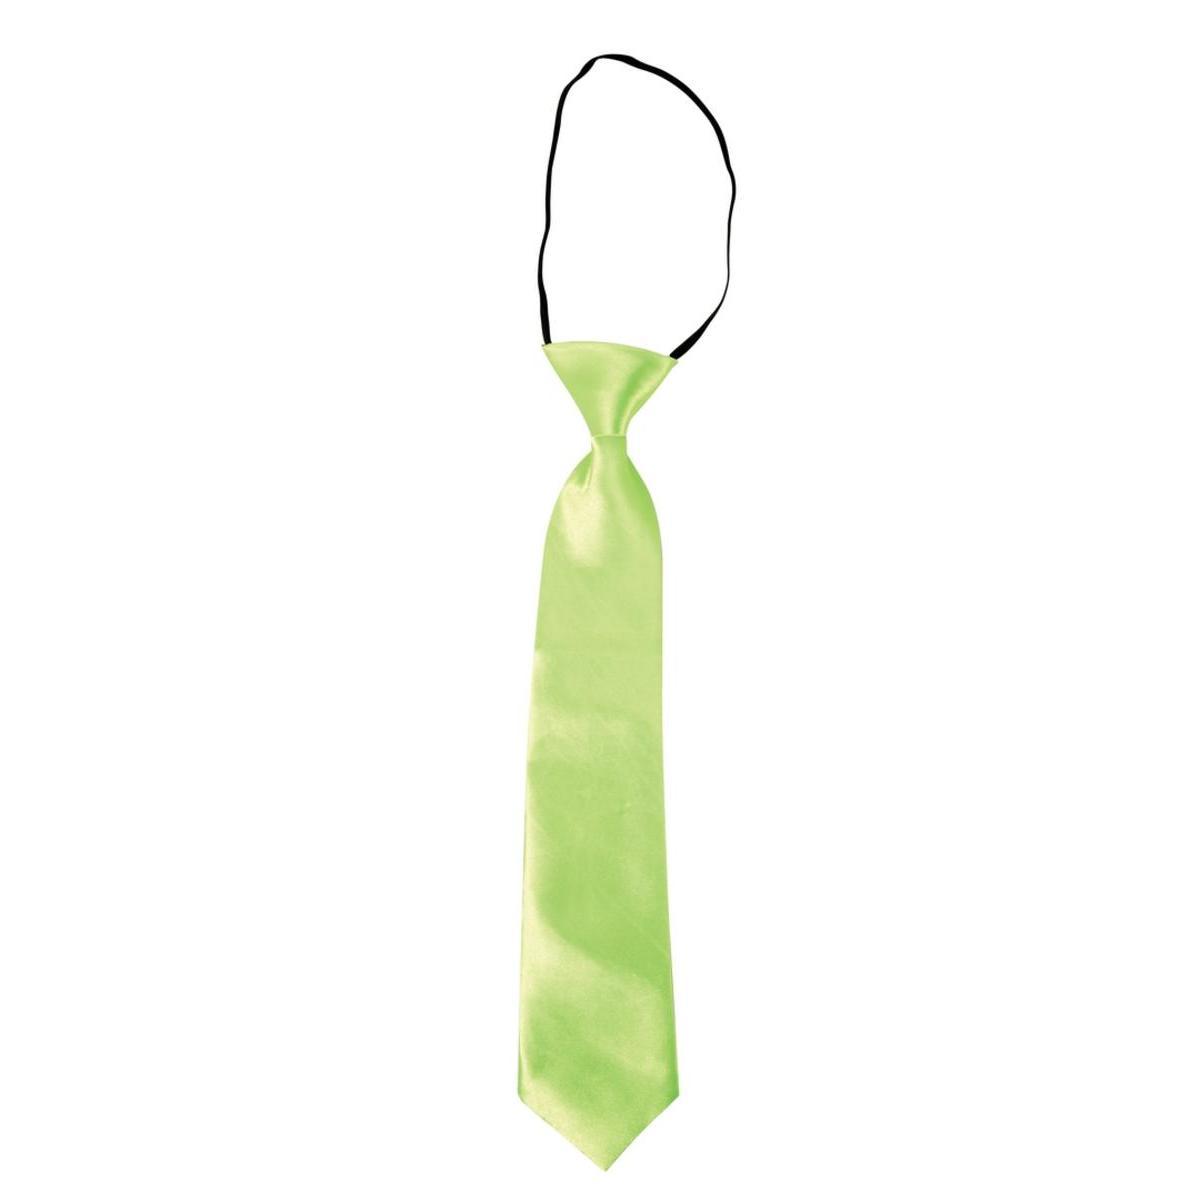 Cravate fluo - L 39 x l 10 cm - Vert - PTIT CLOWN